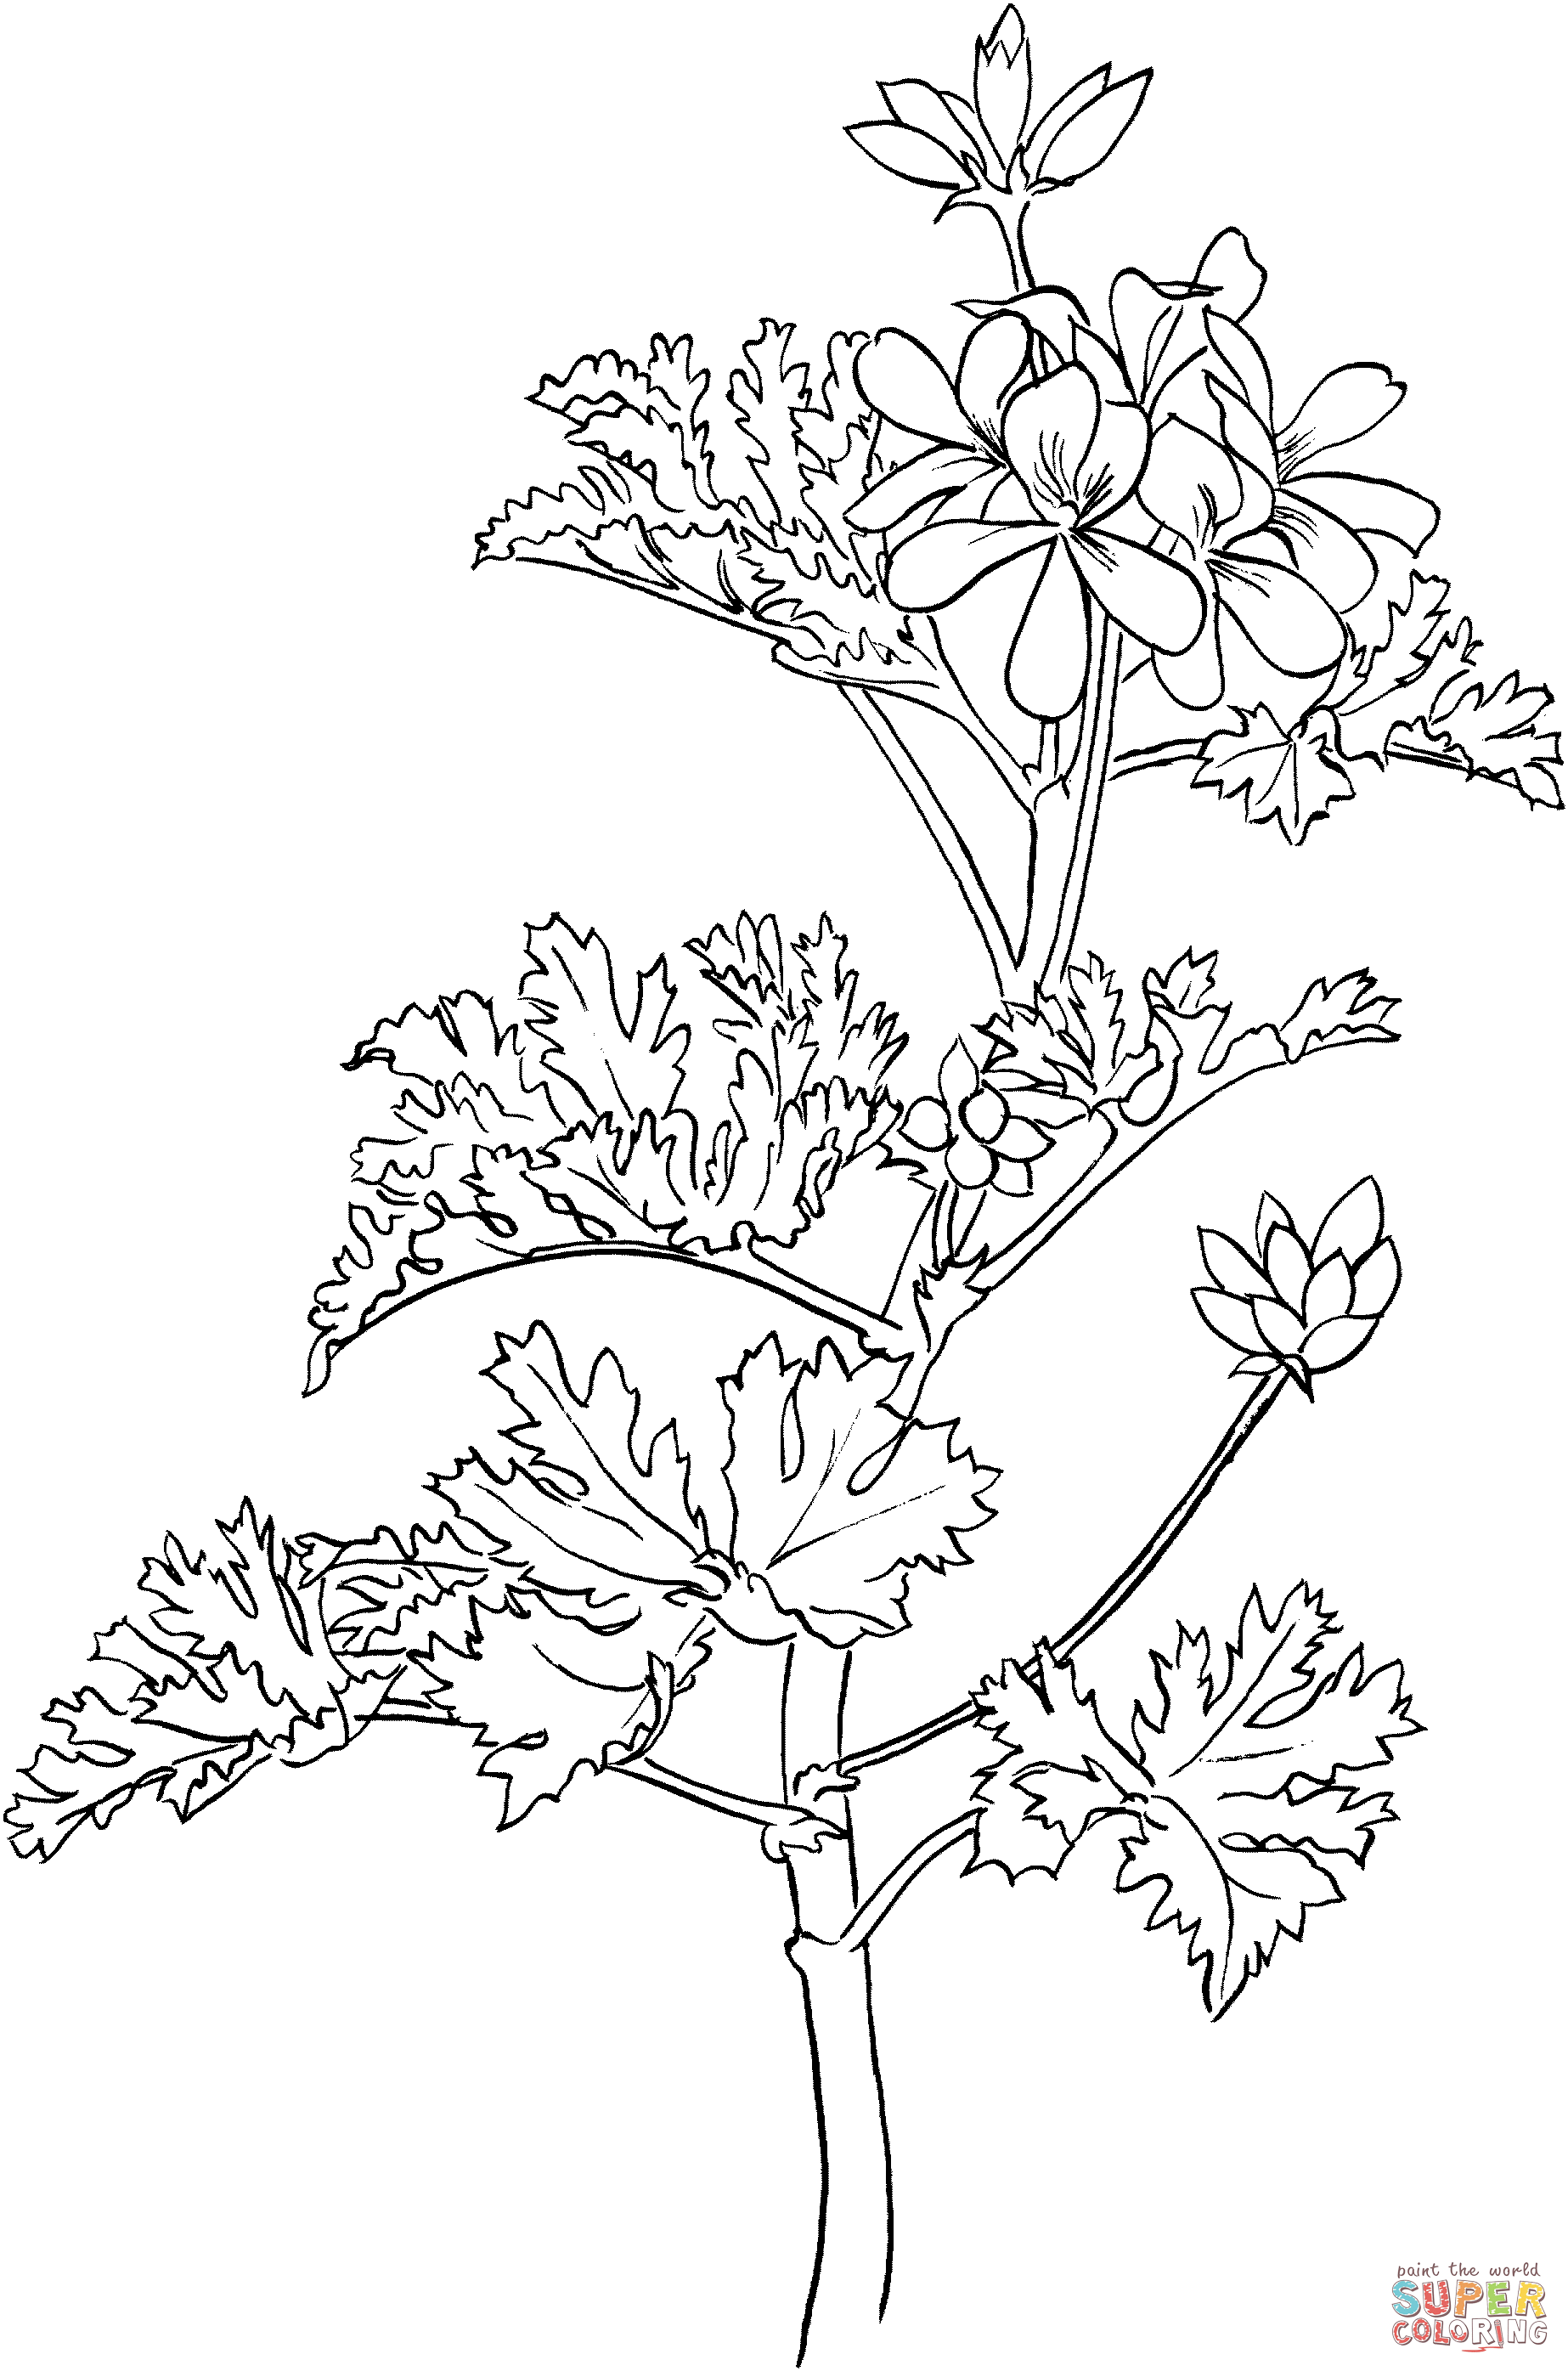 Pelargonium or Rose Geranium Coloring Pages